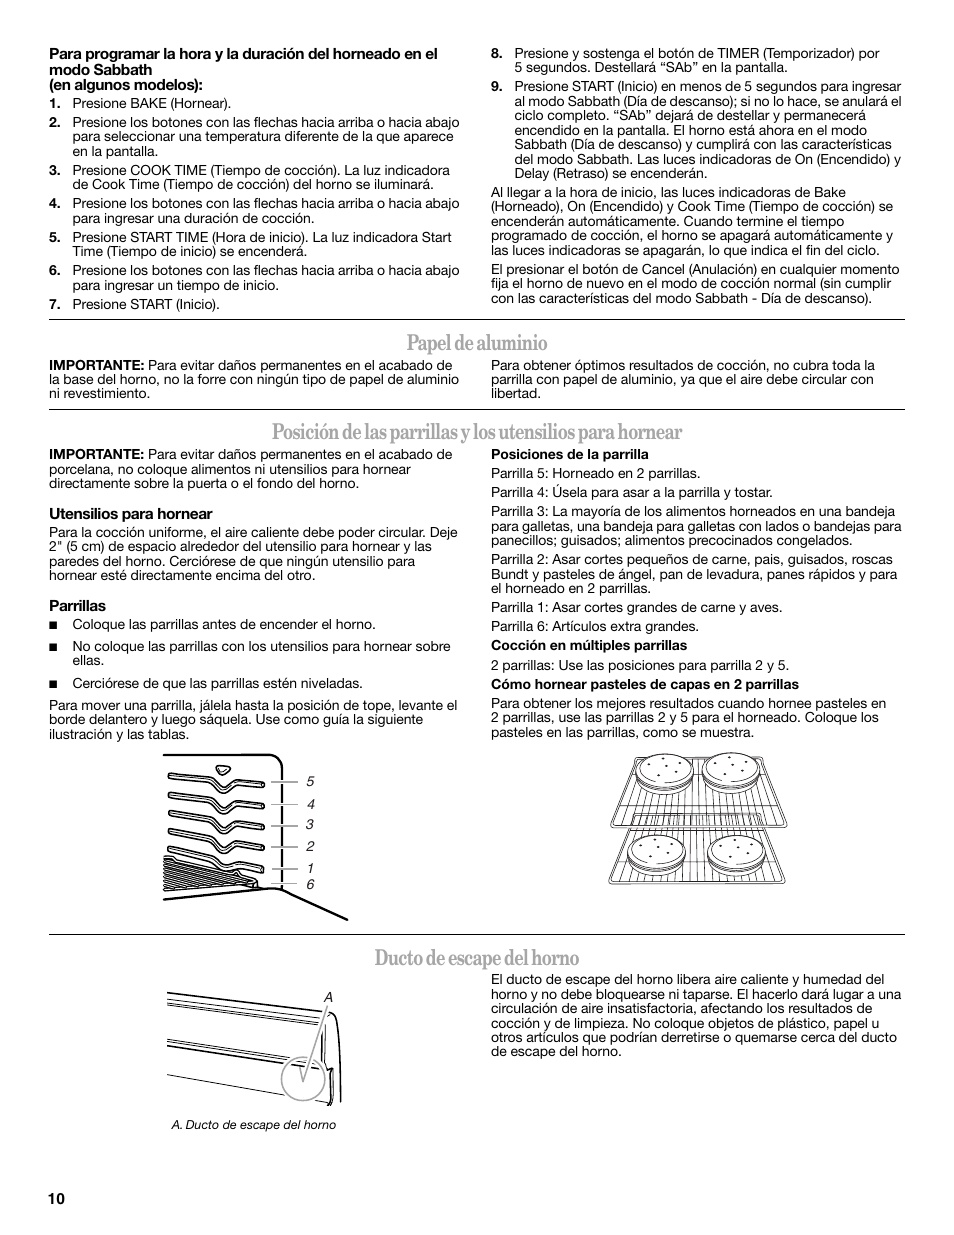 Papel de aluminio, Ducto de escape del horno | Whirlpool WFG510S0AS Manual del usuario | Página 10 / 19